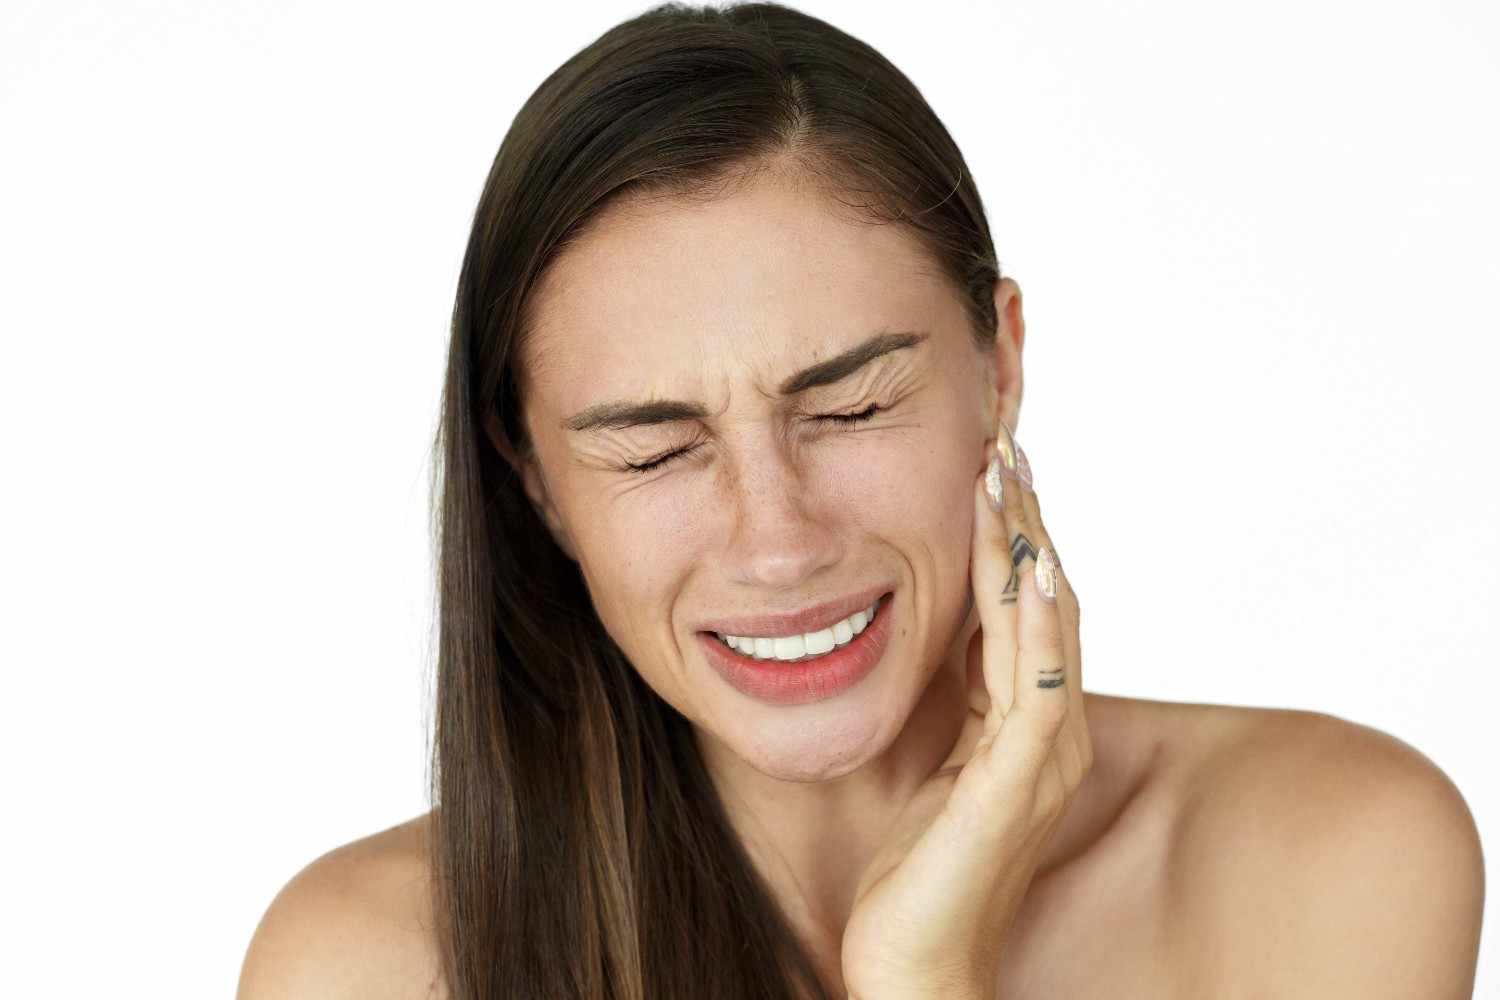 how to stop broken tooth pain